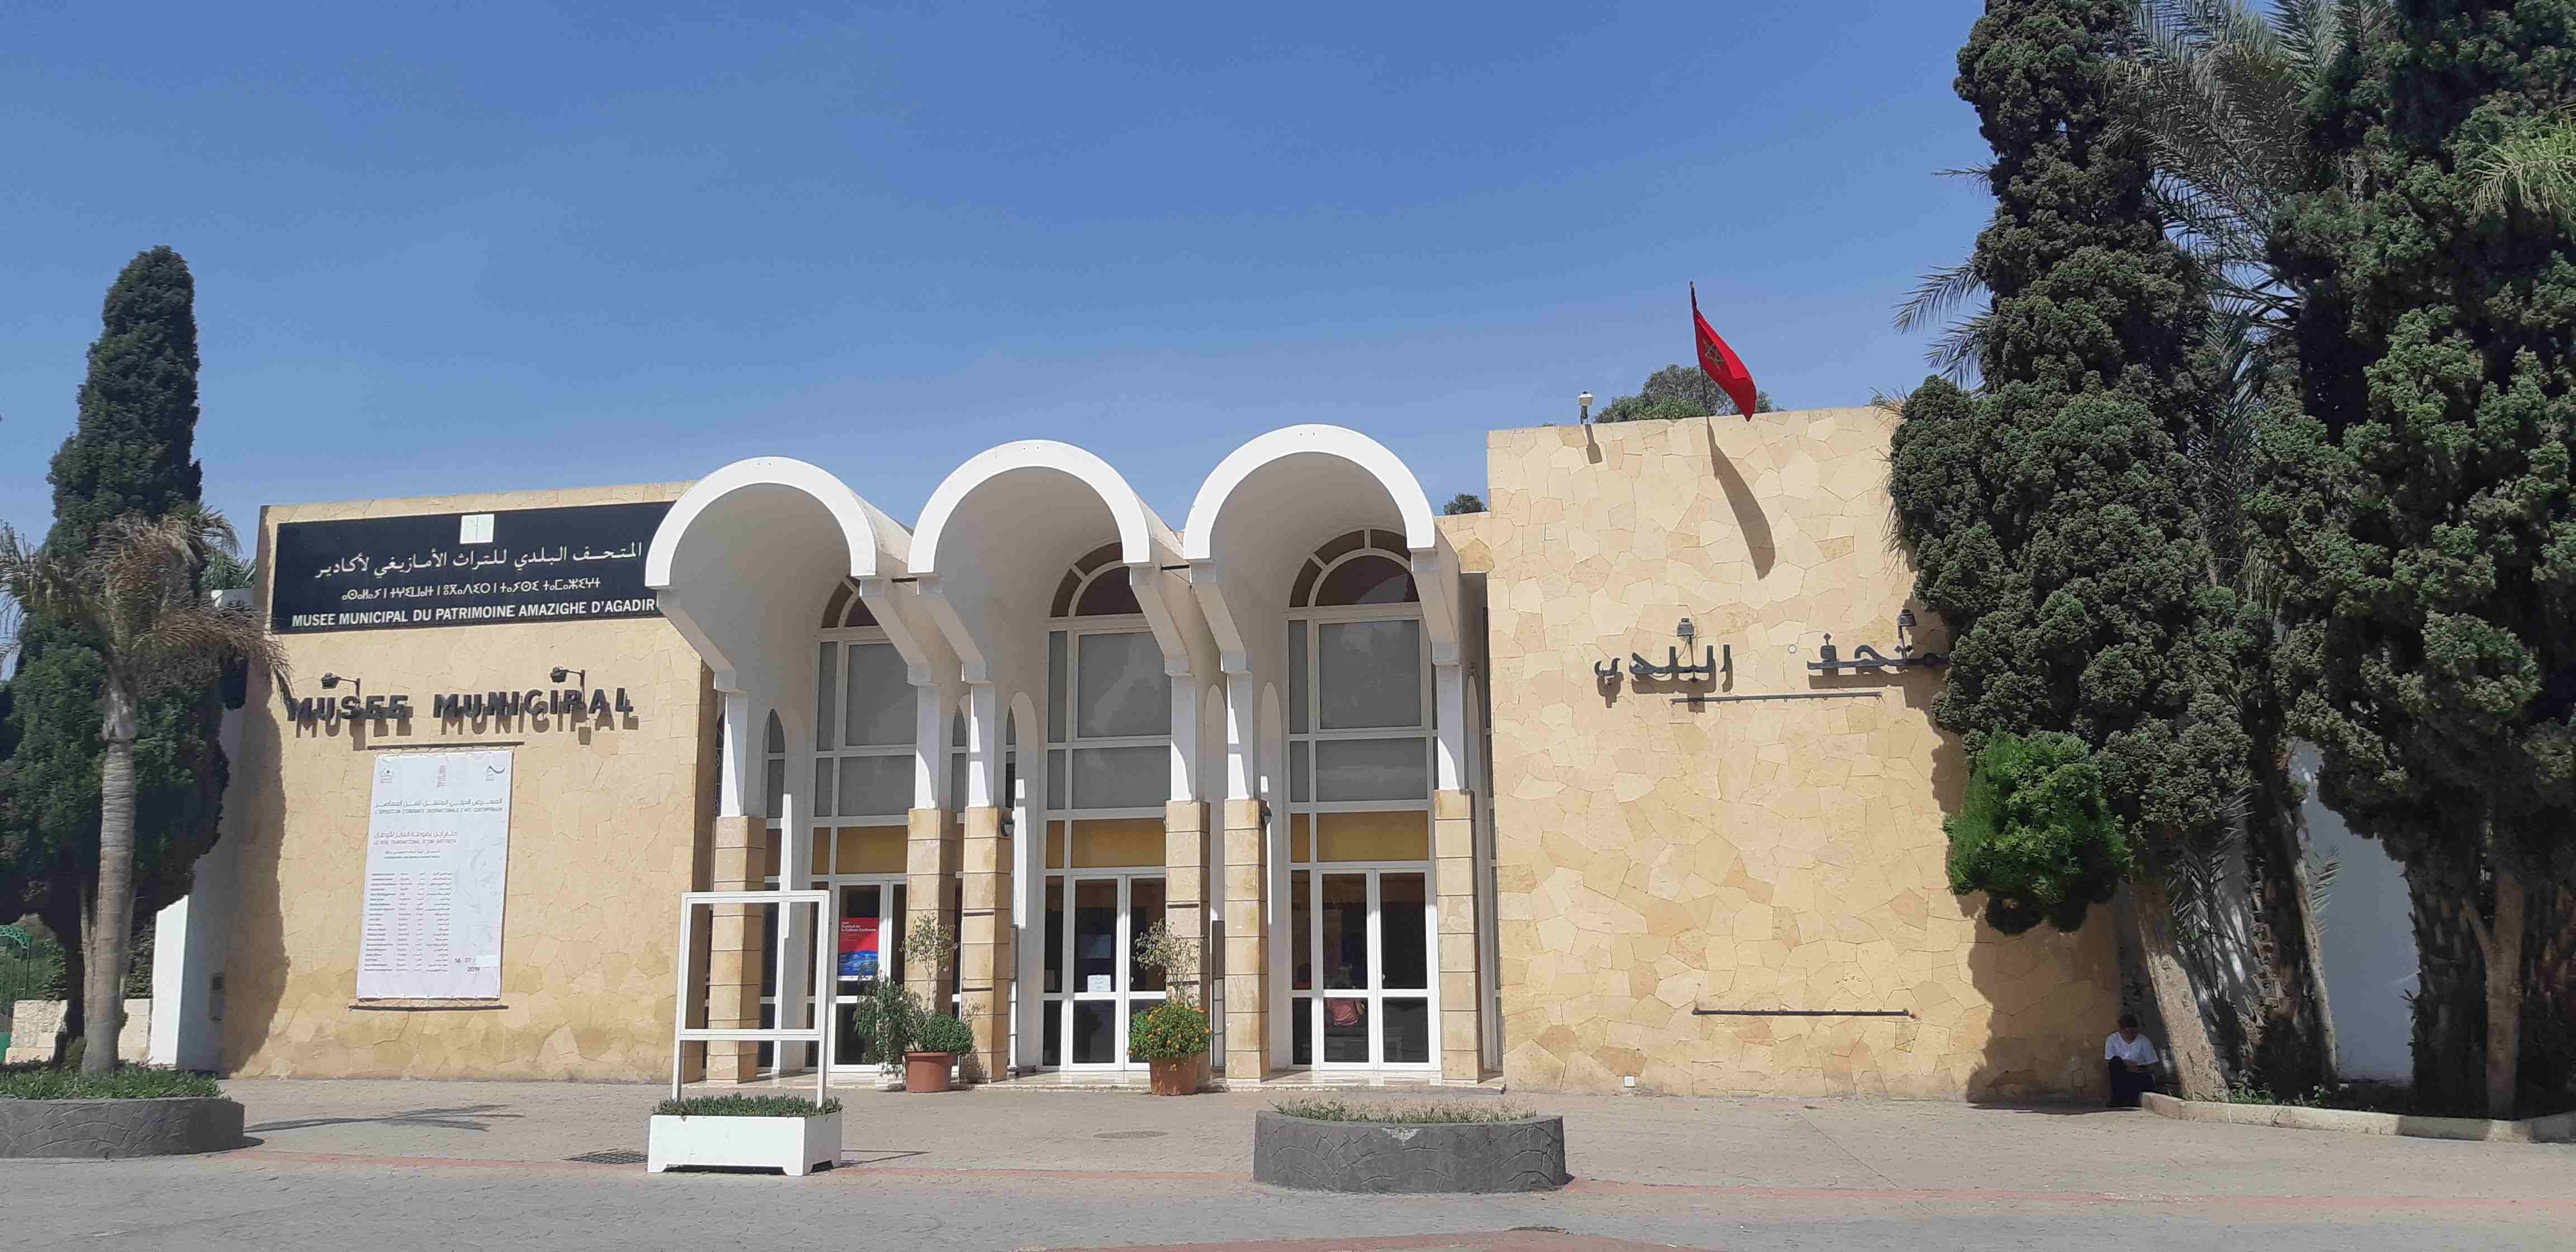 museo del patrimonio amazigh